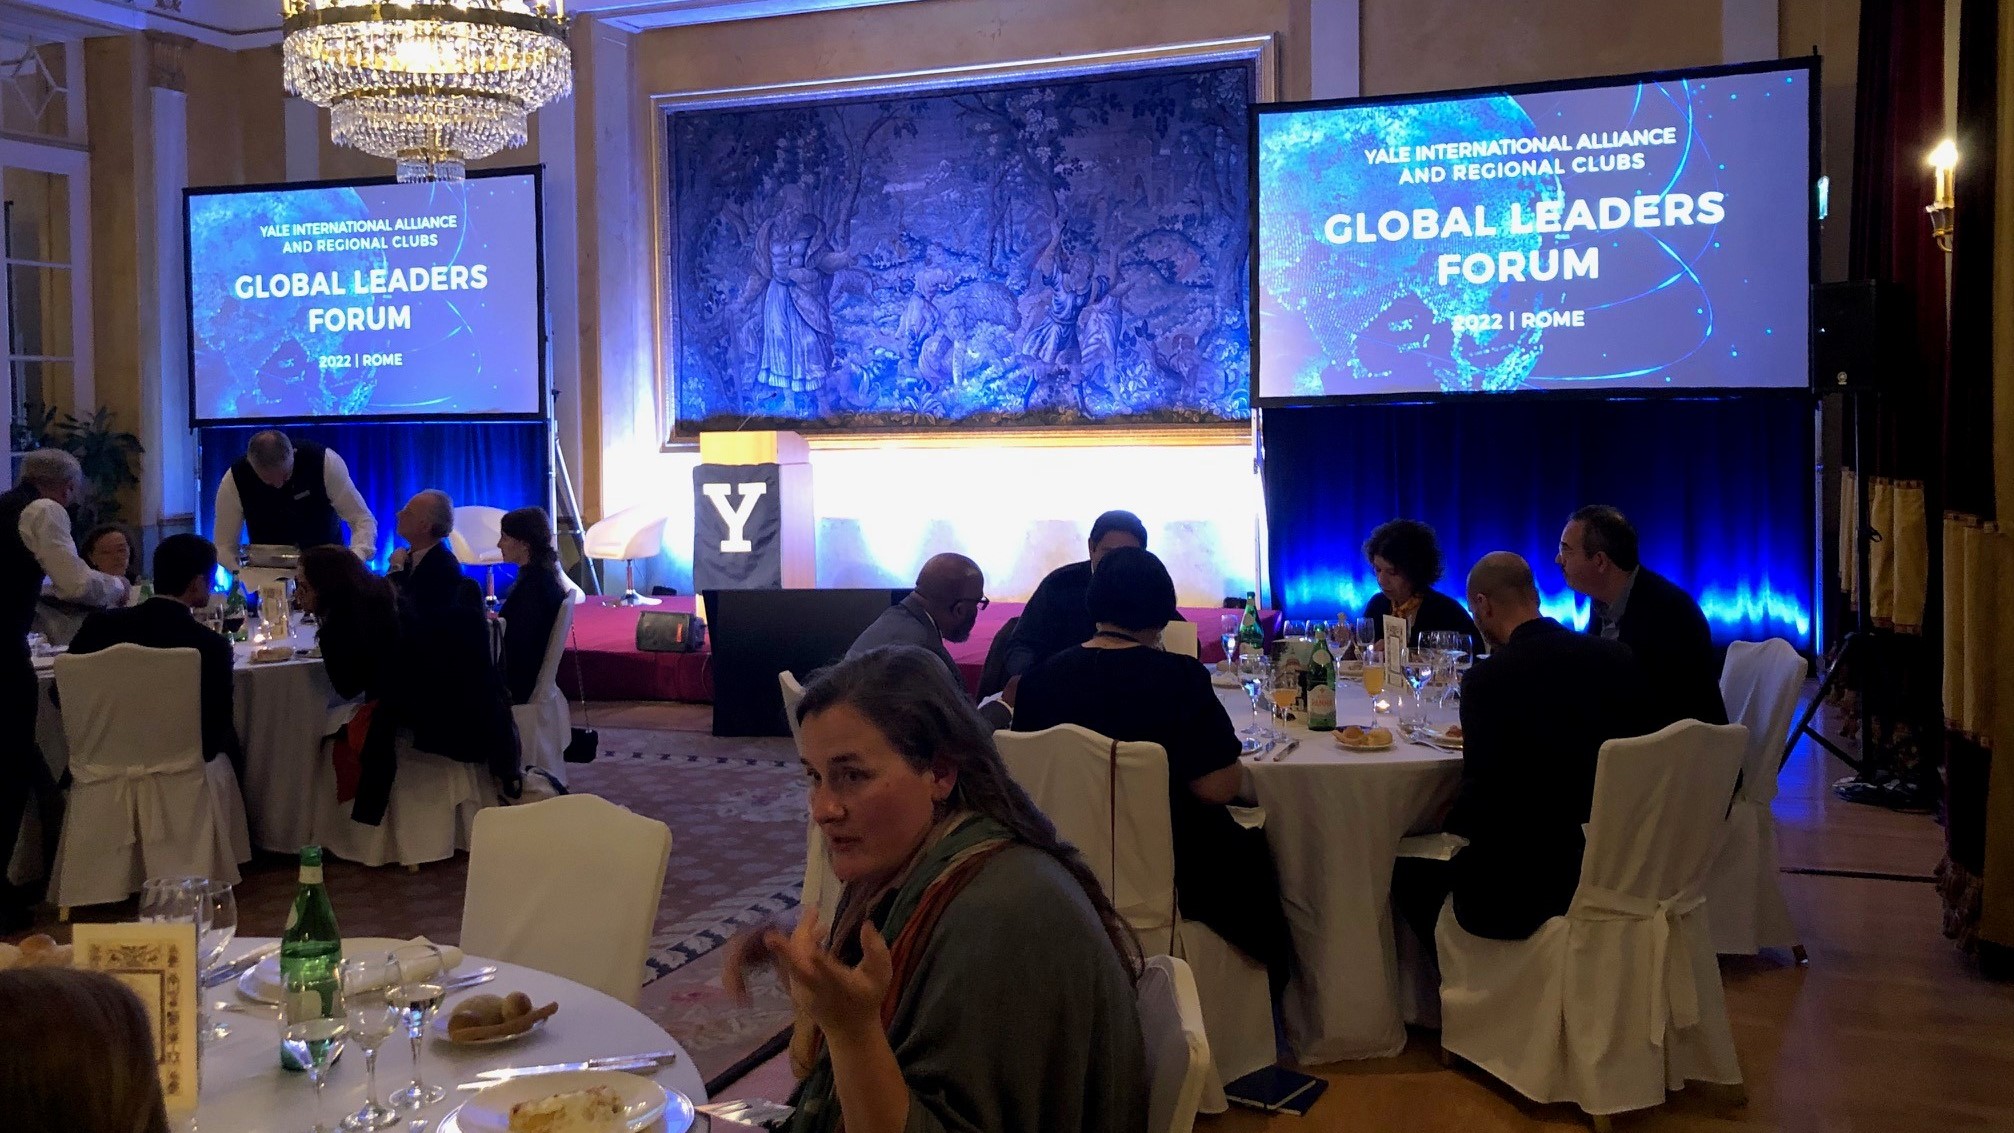 Global Leaders Forum - Opening Dinner